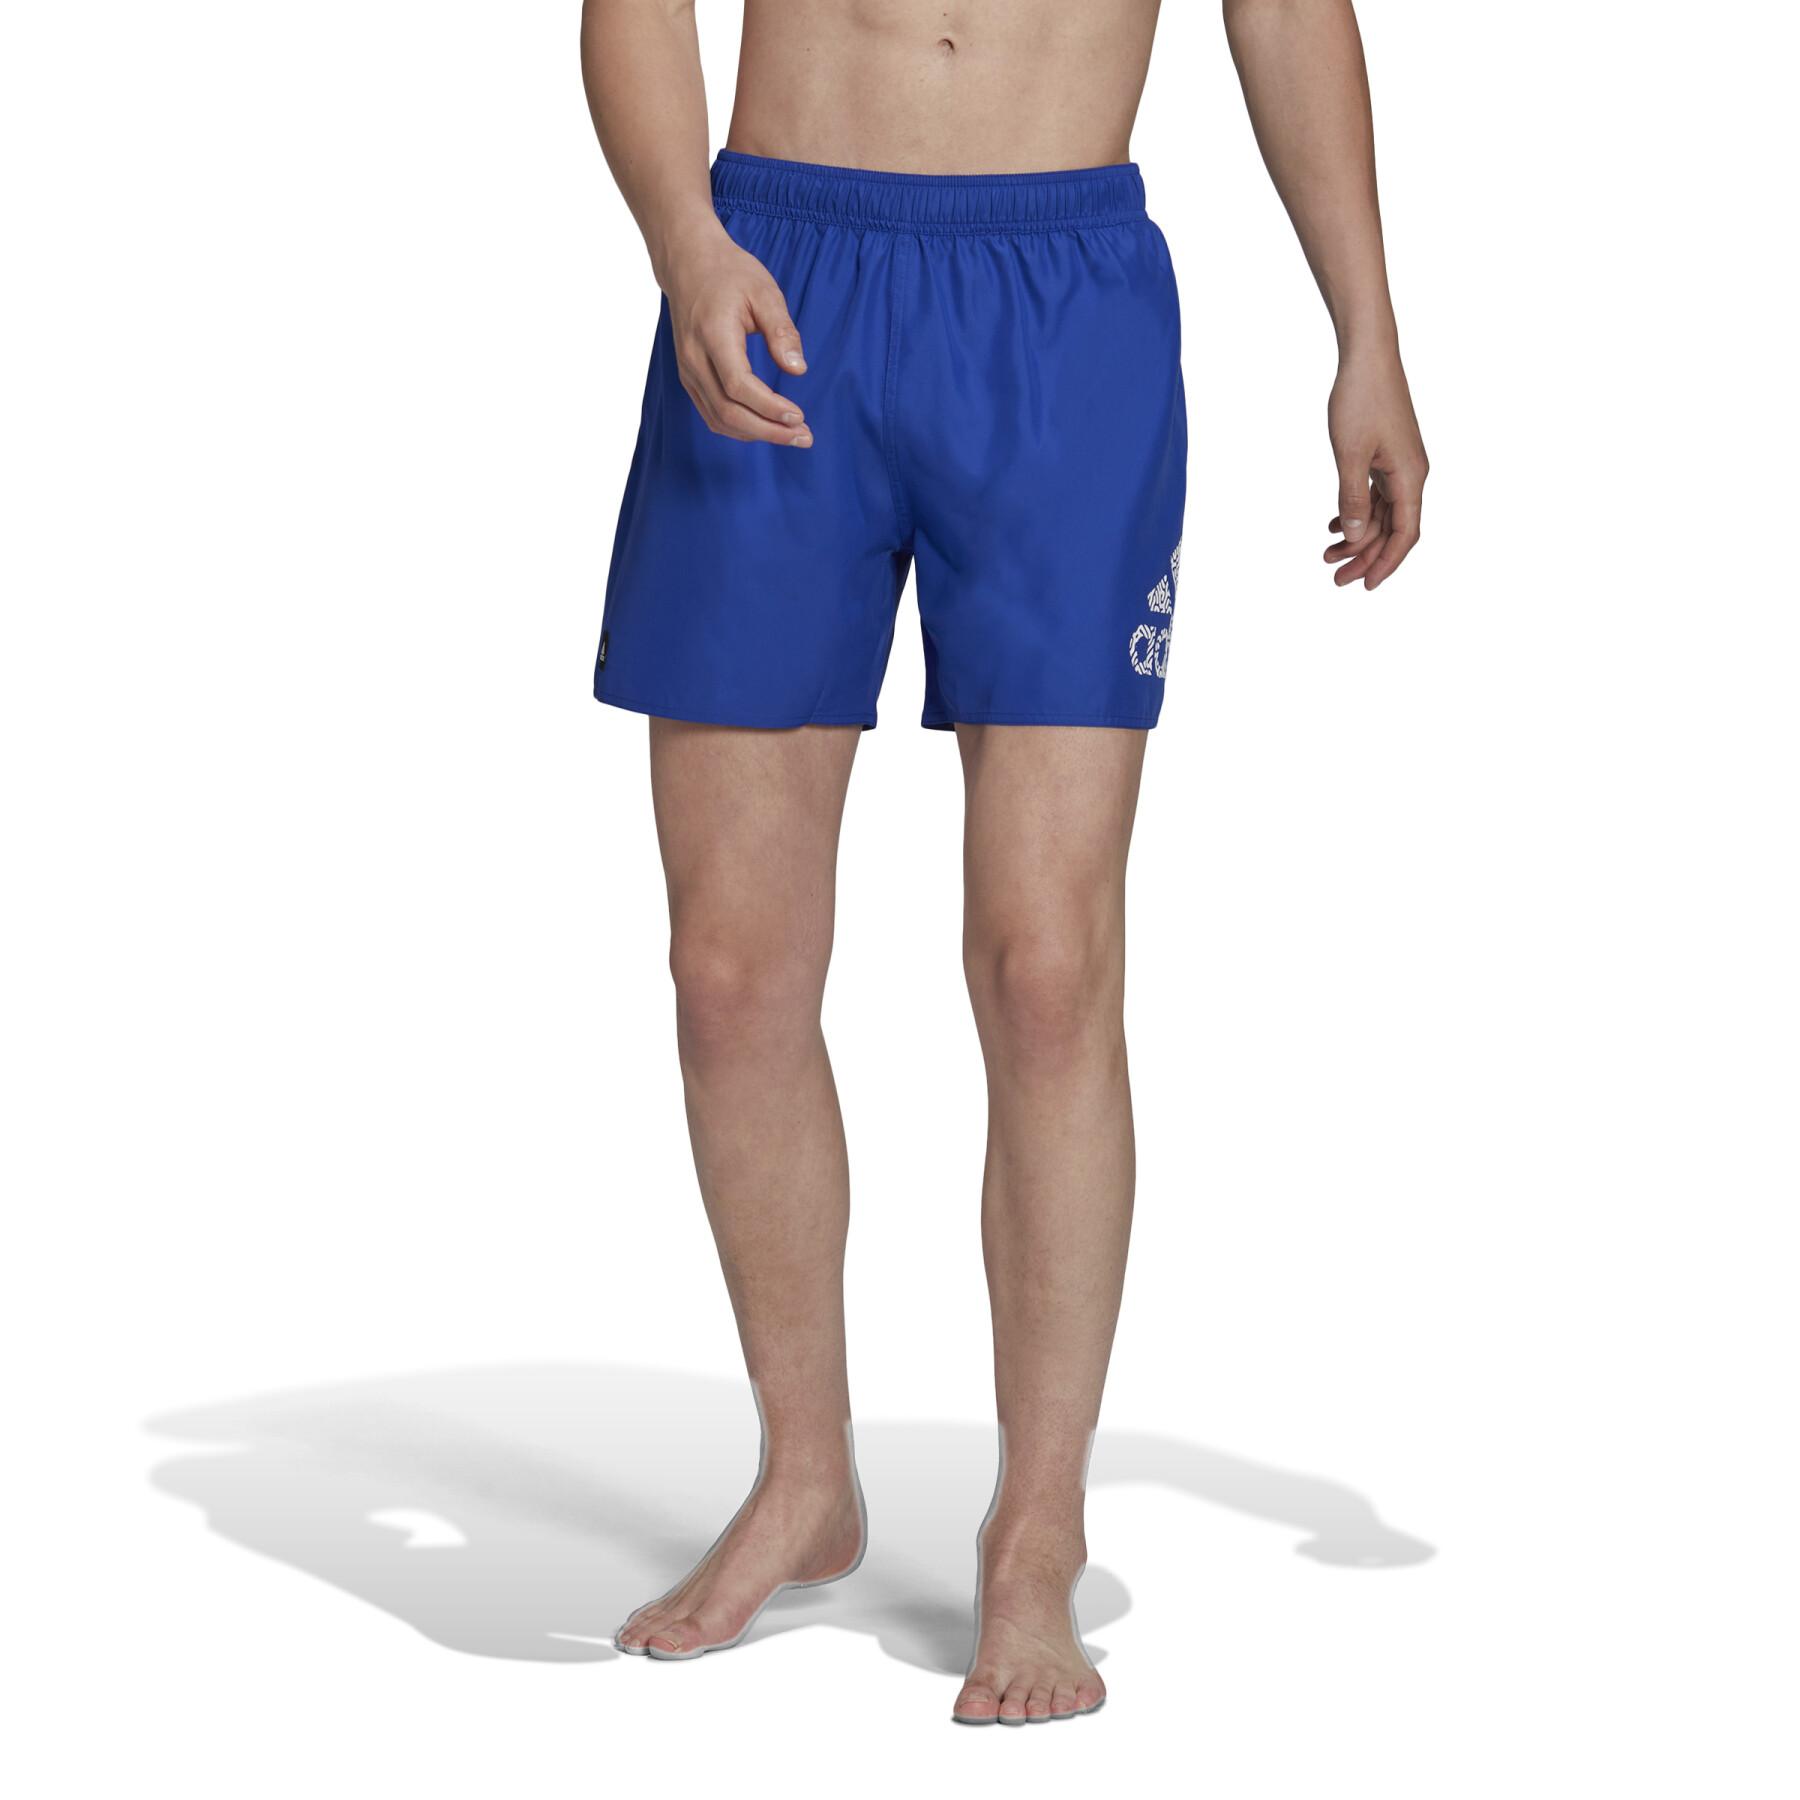 Short swim shorts adidas Clx